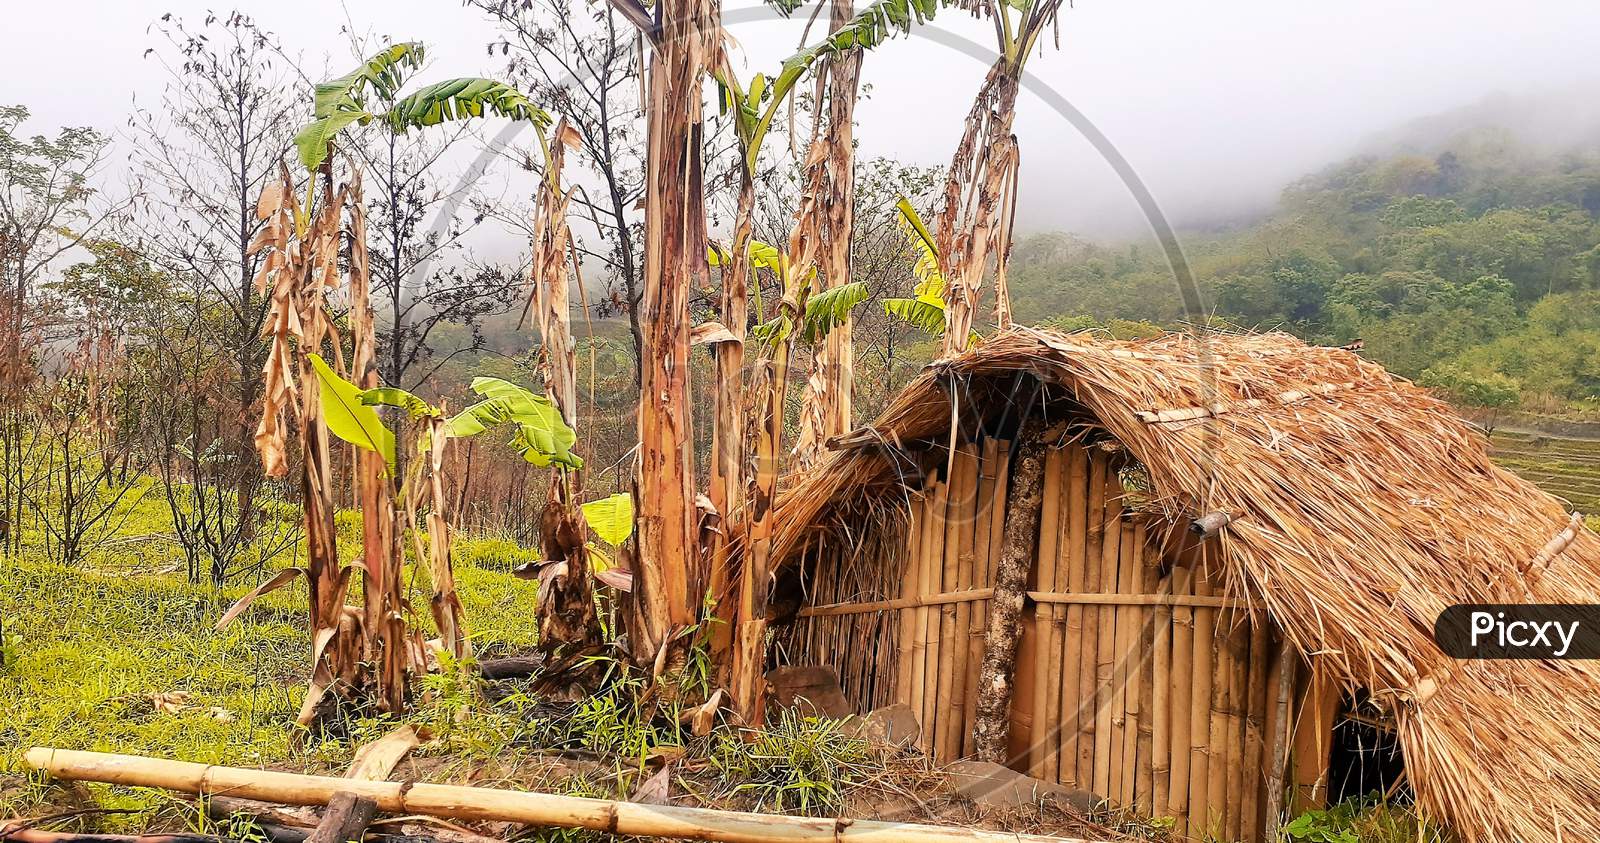 beautiful village traditional hut